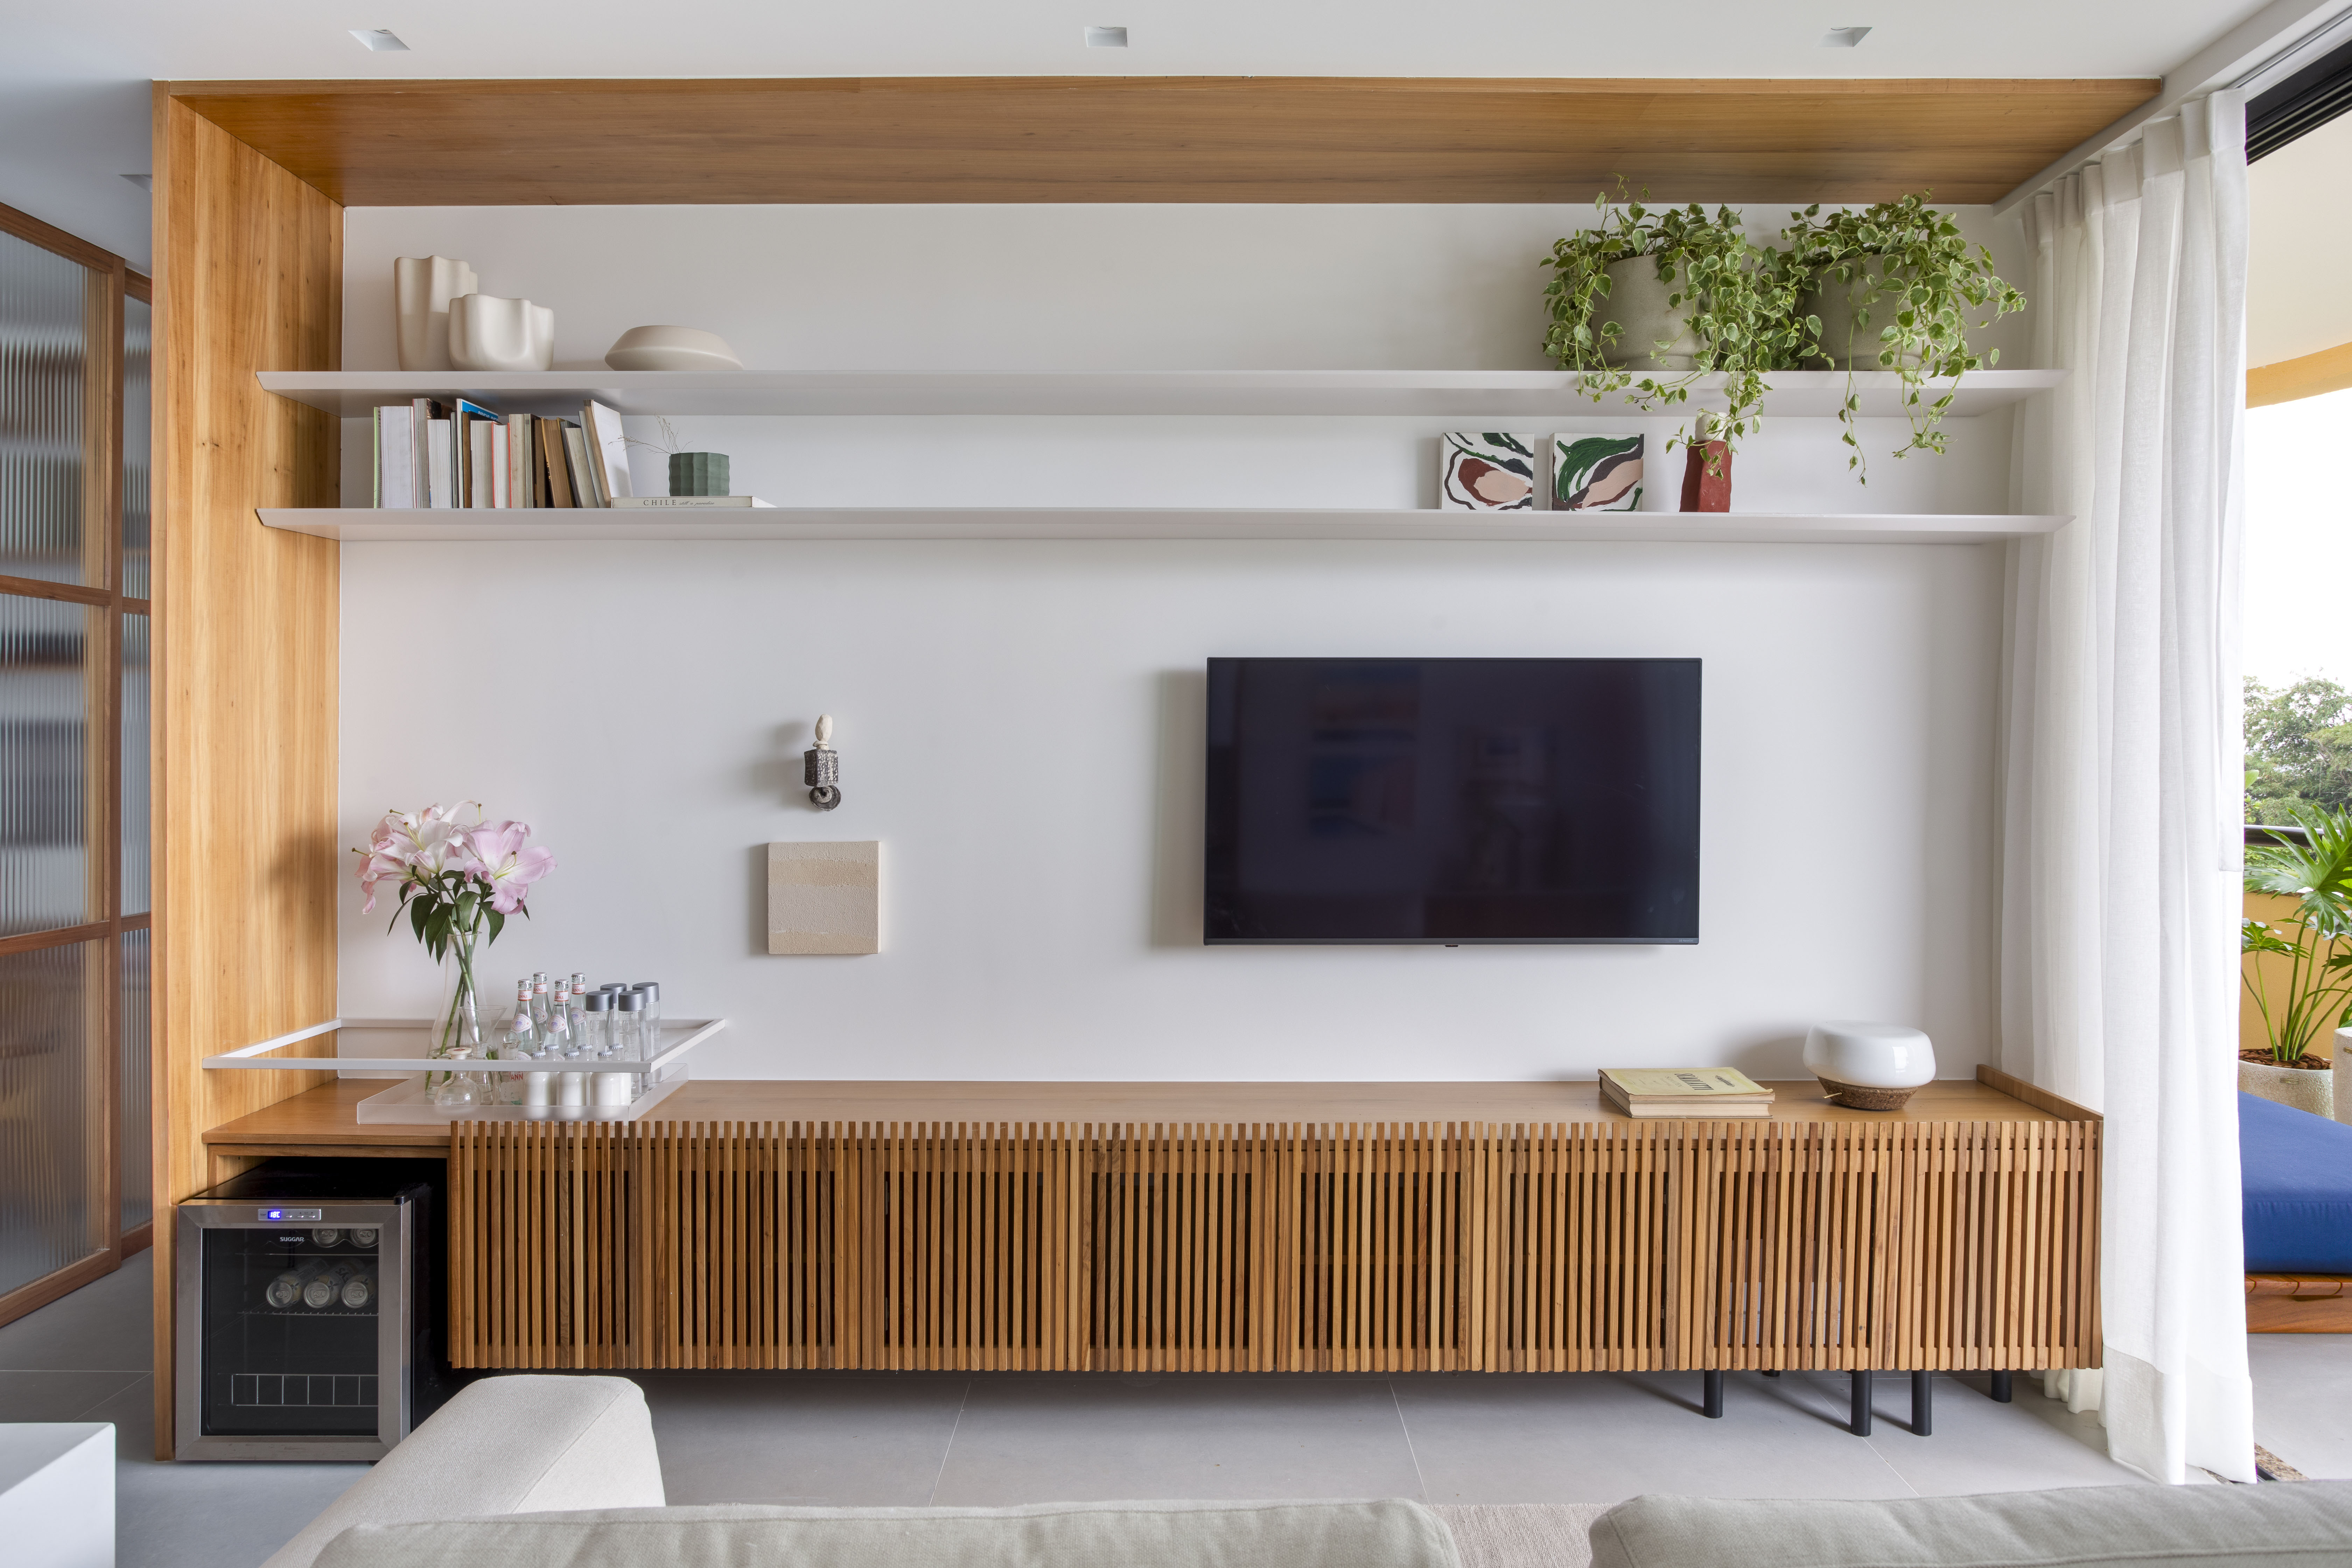 Branco e madeira criam décor cozy em apartamento de 70 m². Projeto de Rafael Ramos. Na foto, sala de tv com aparador ripado e prateleiras.